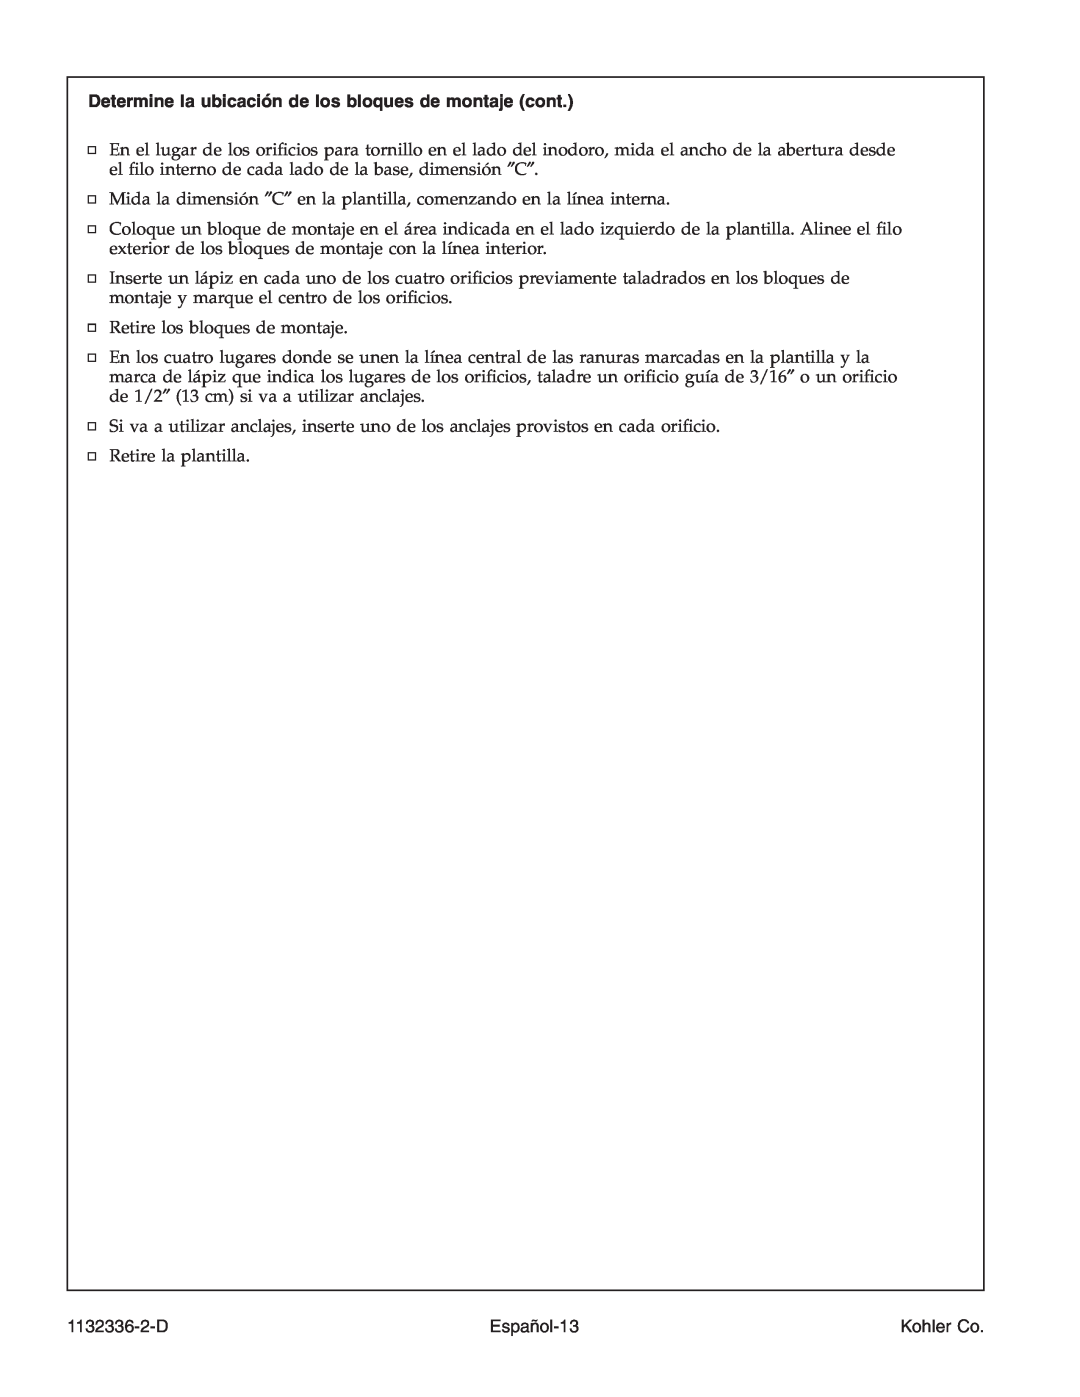 Kohler K-3900 manual Español-13, 1132336-2-D, Kohler Co 